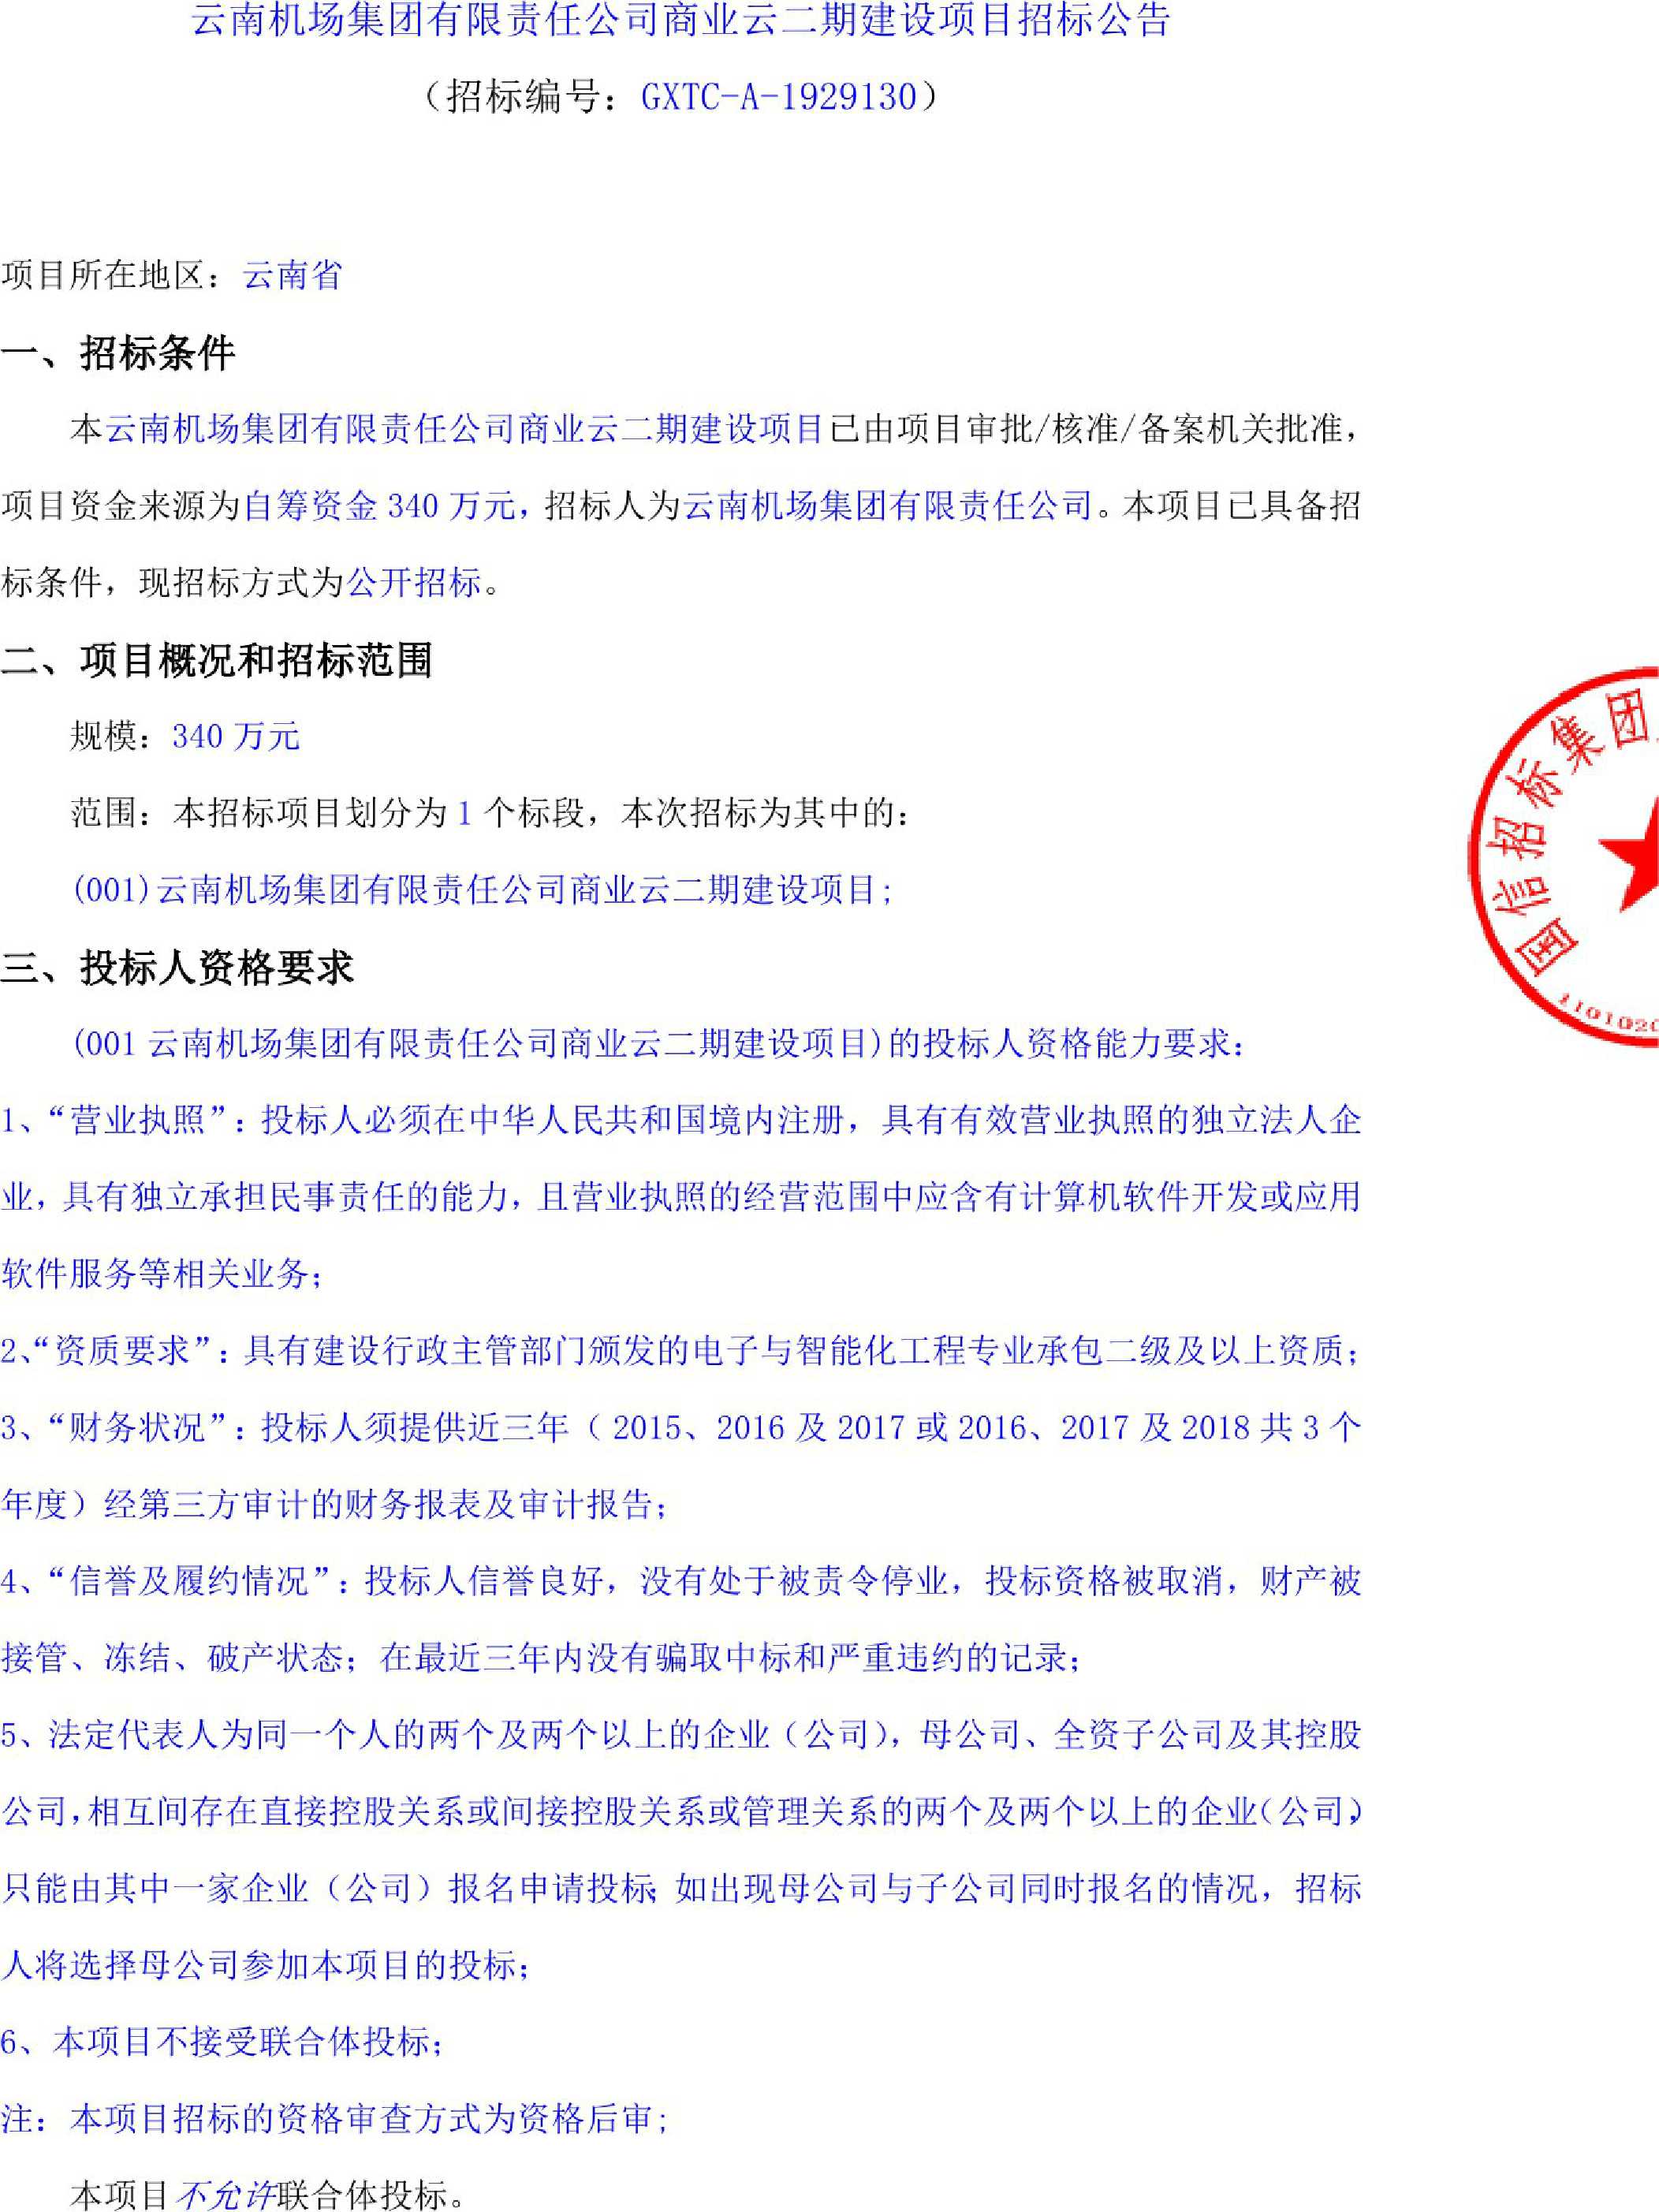 云南机场集团有限责任公司商业云二期建设项目